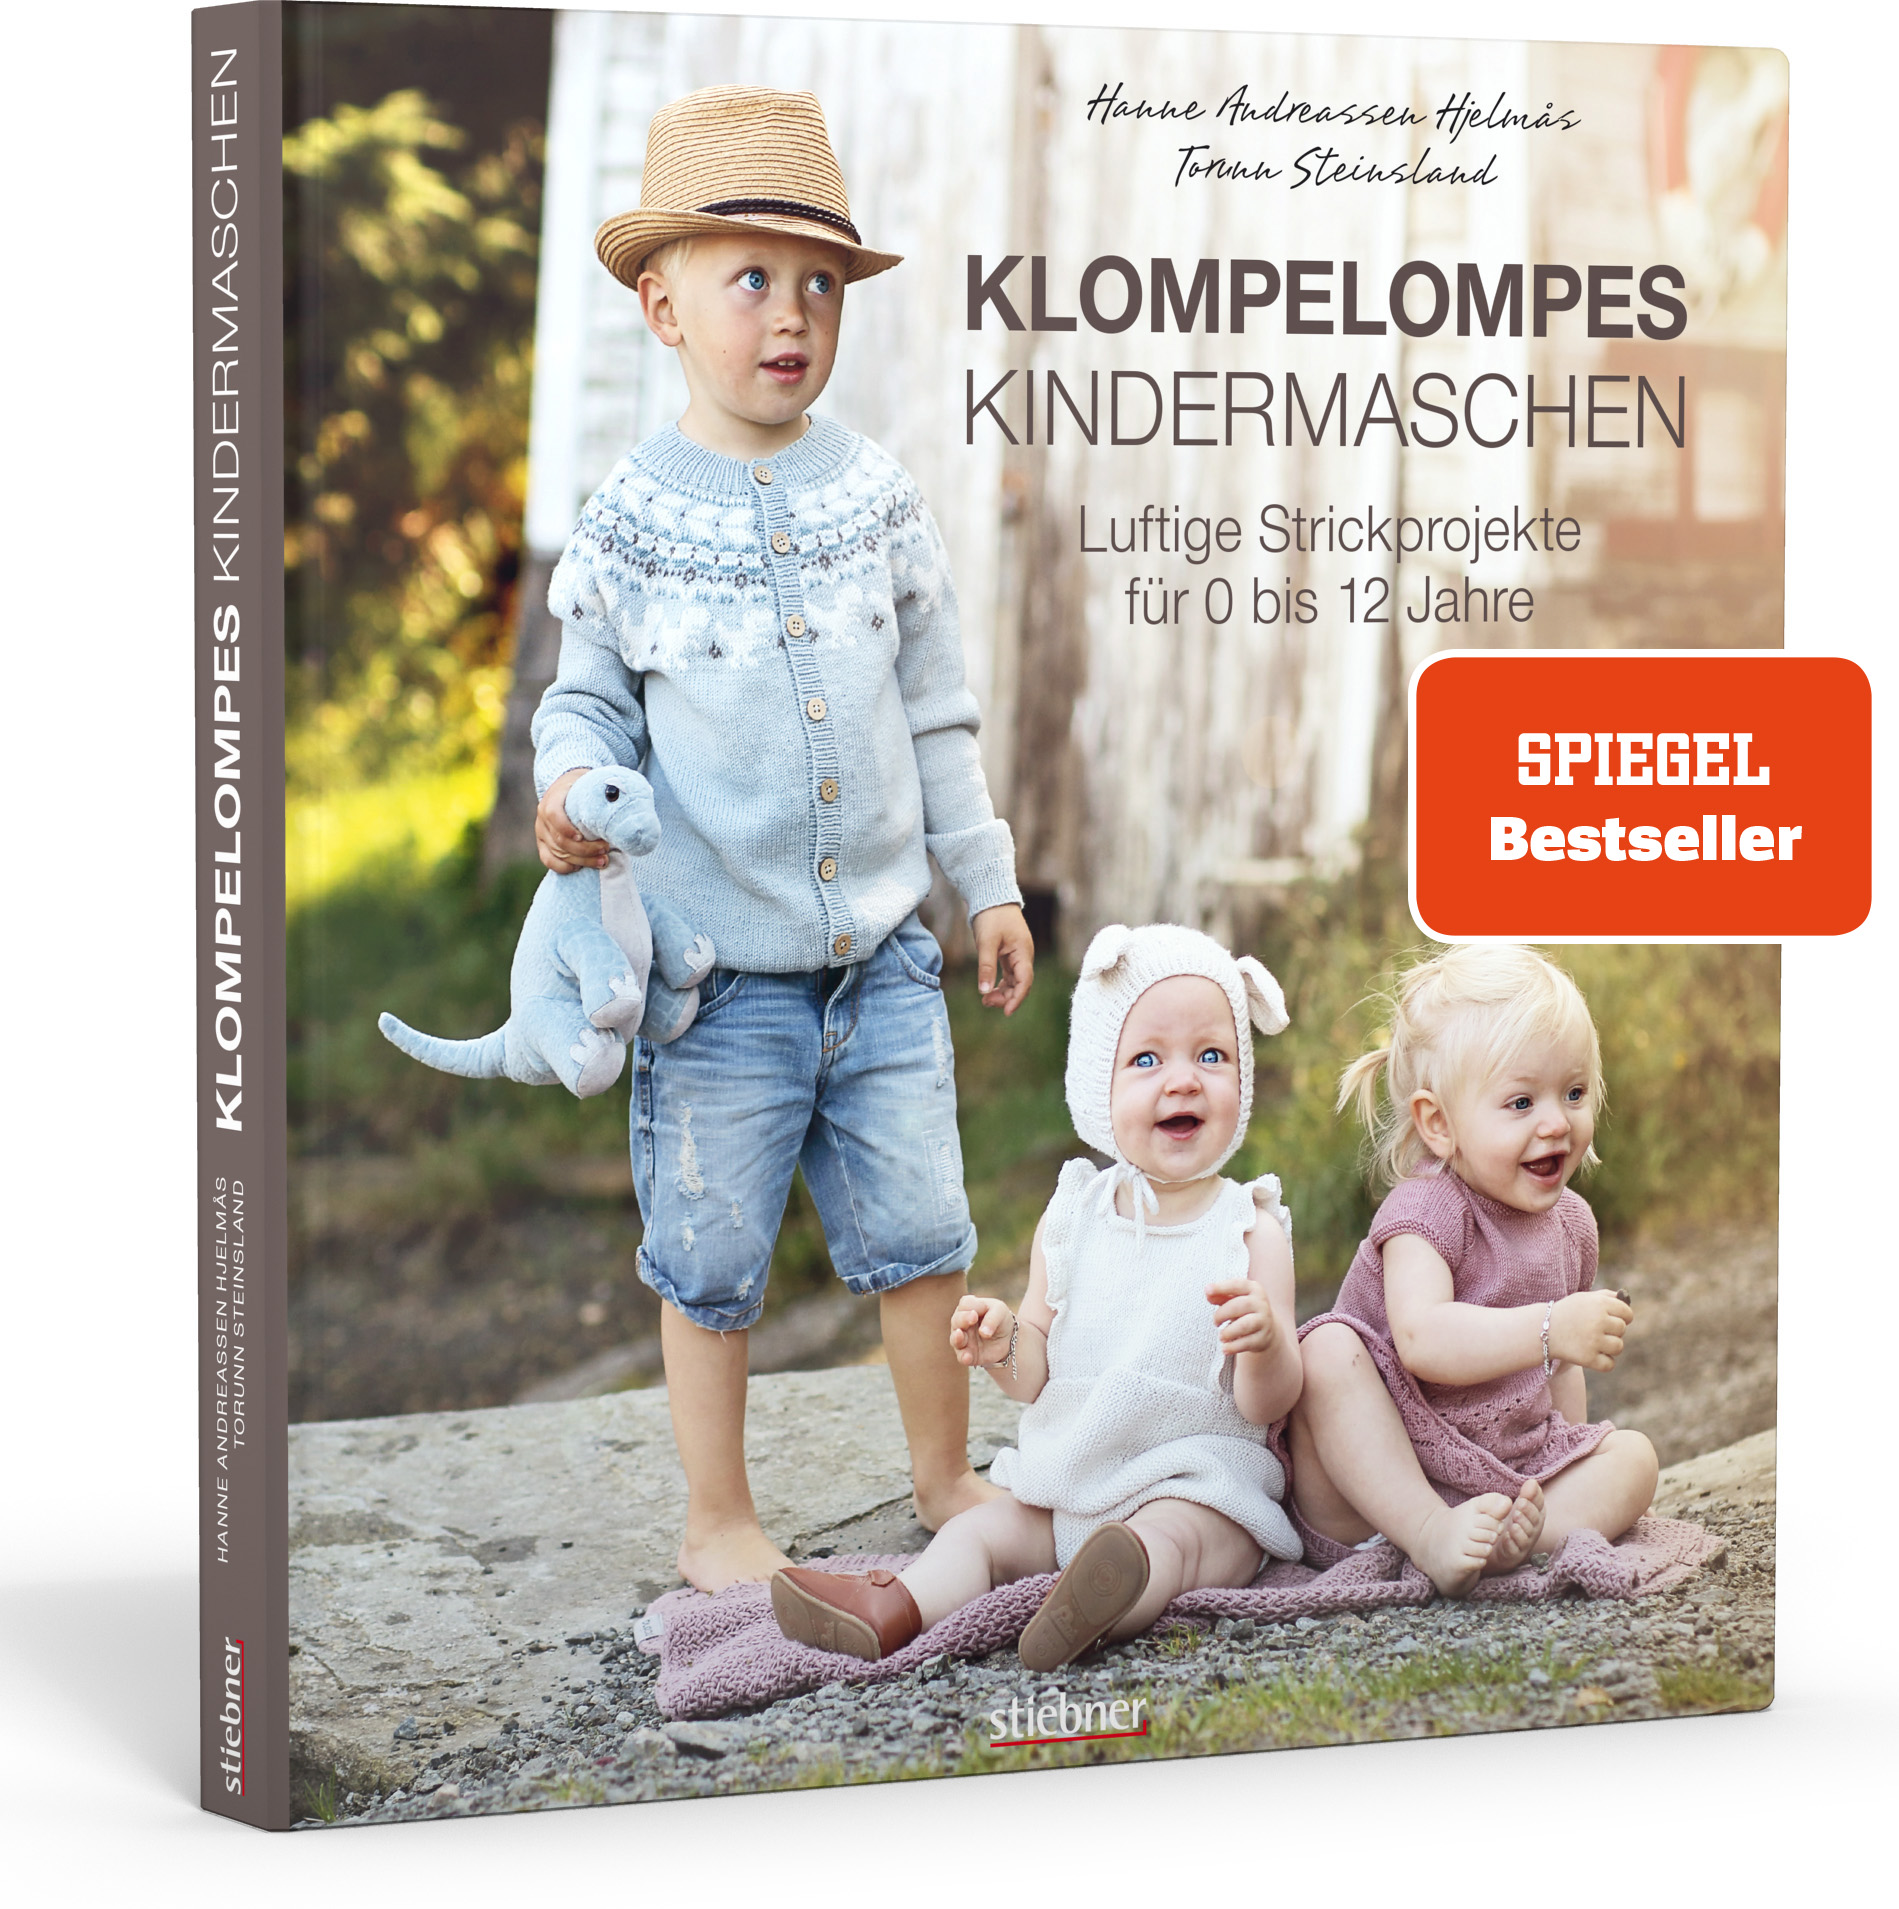 Klompelompe (Hjelmas & Steinsland)